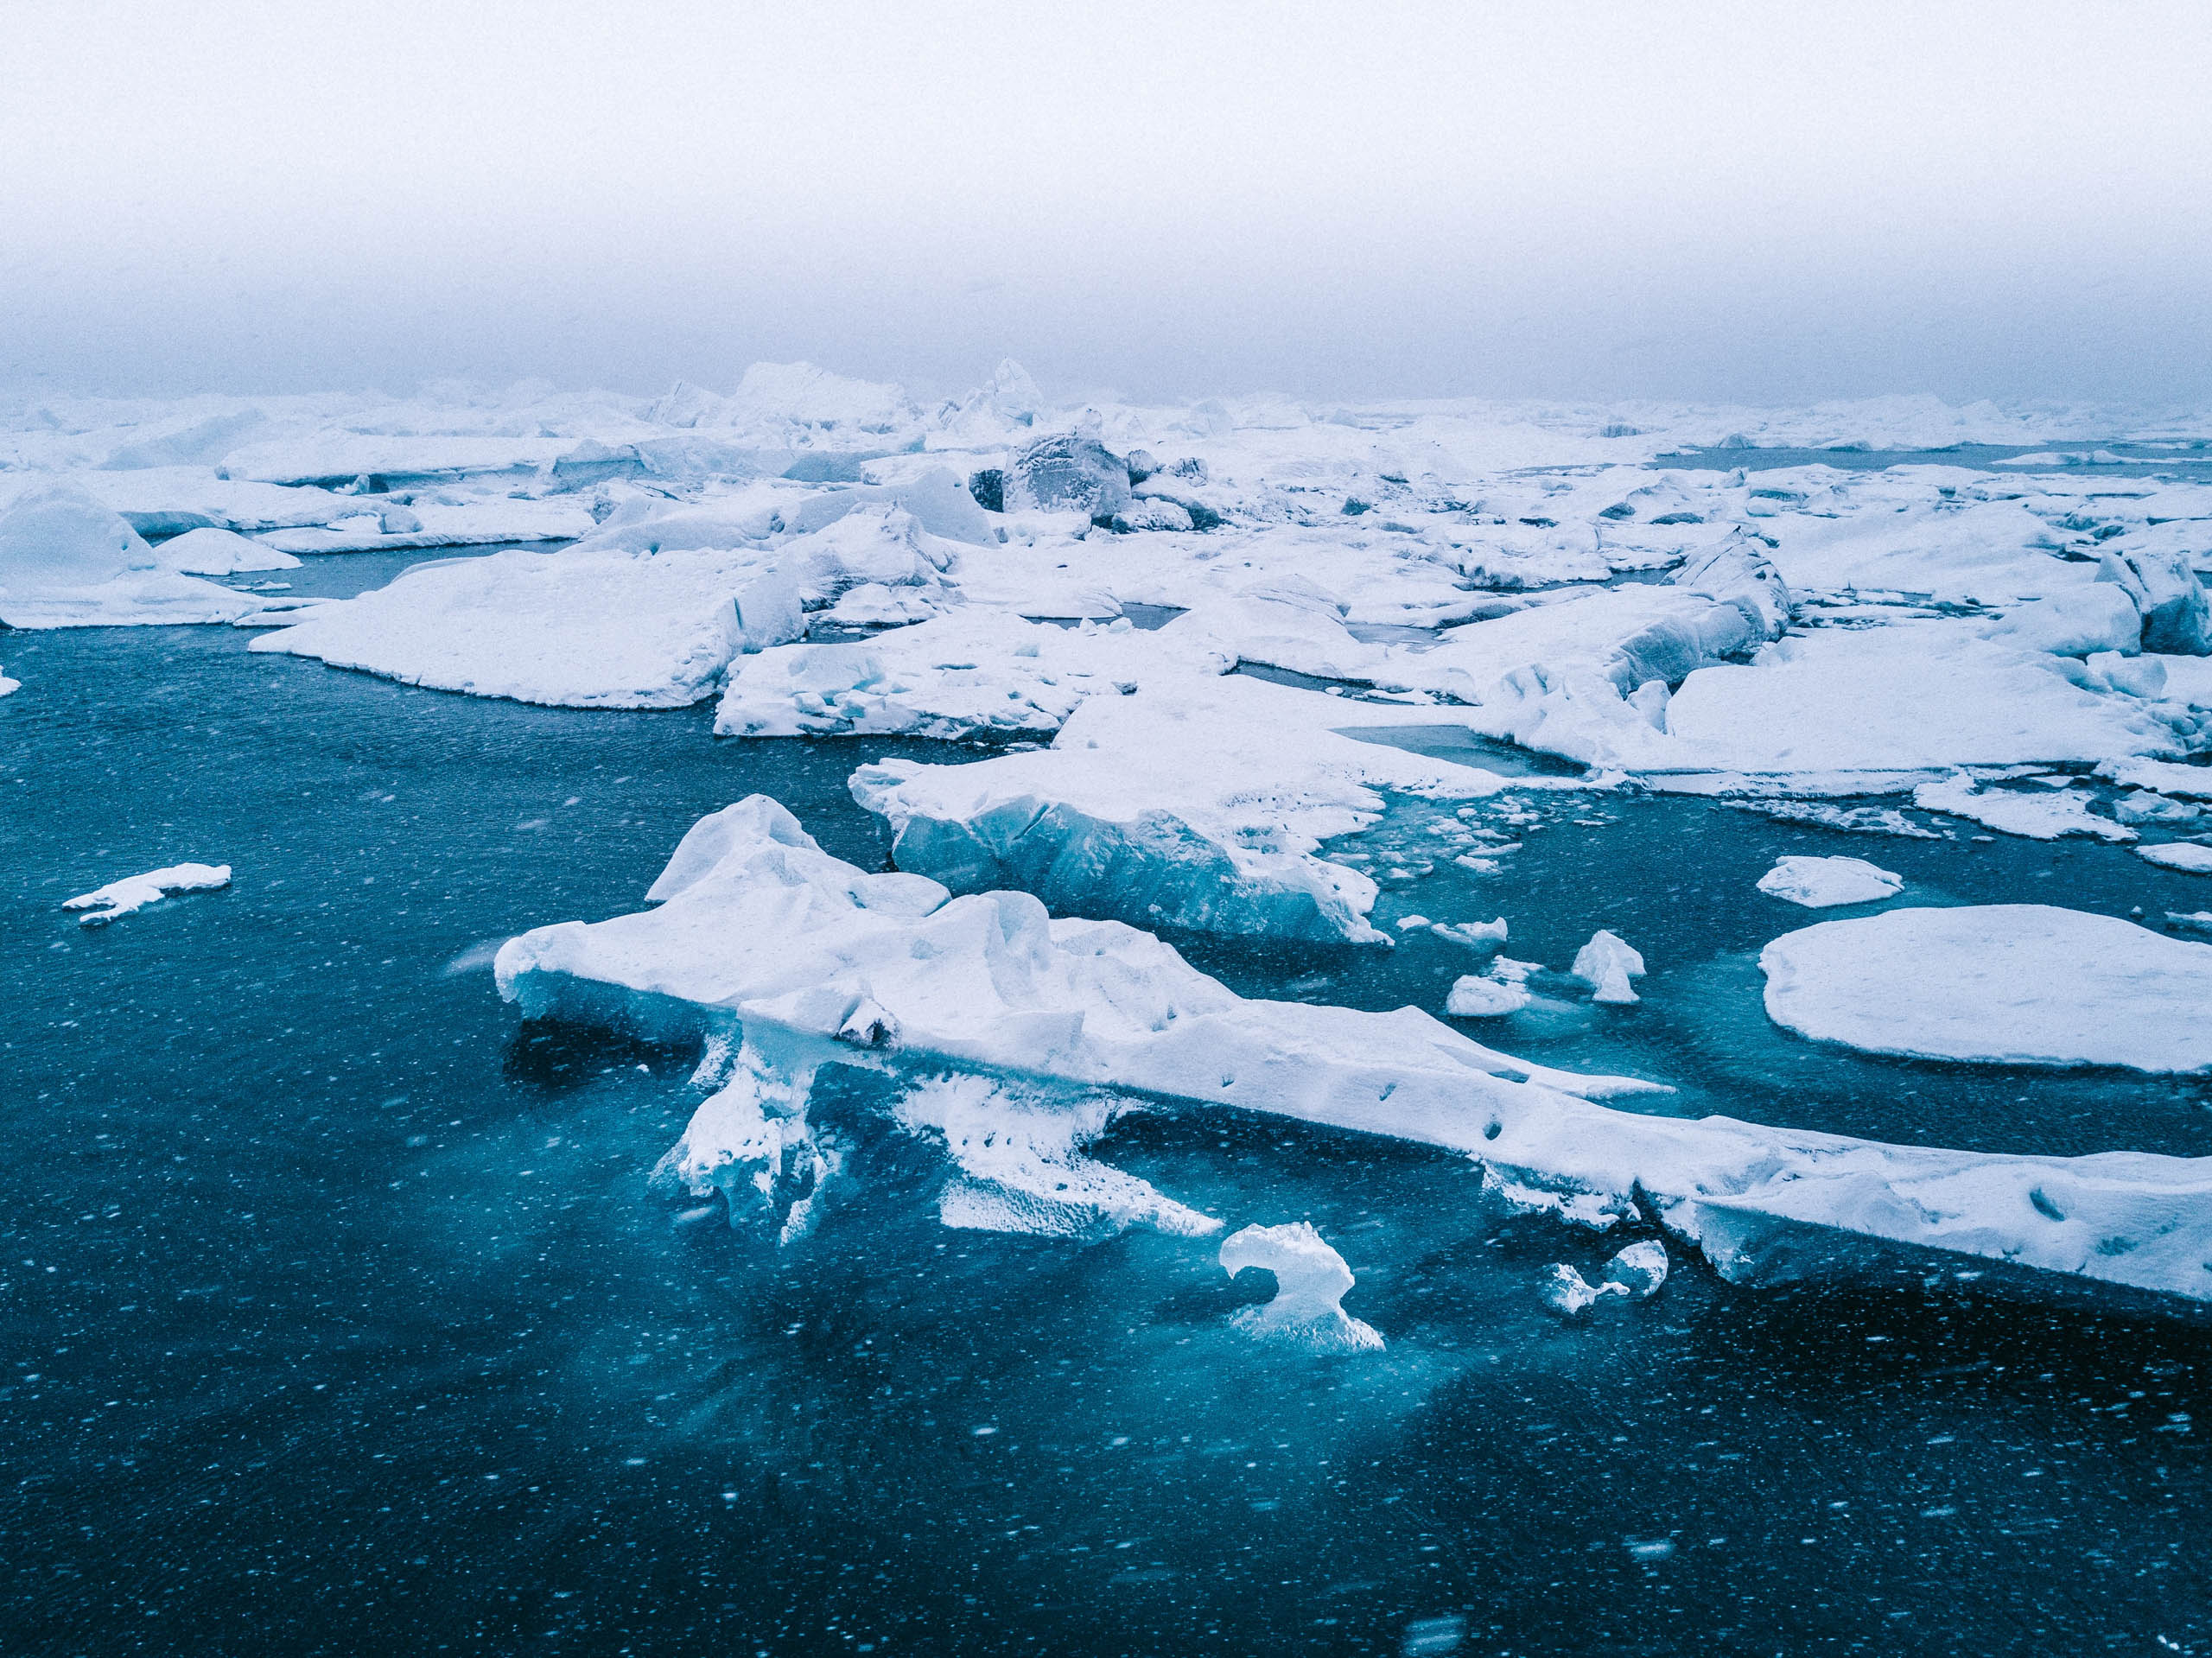 Bắc Cực hay Nam Cực là nơi lạnh nhất trên Trái Đất?